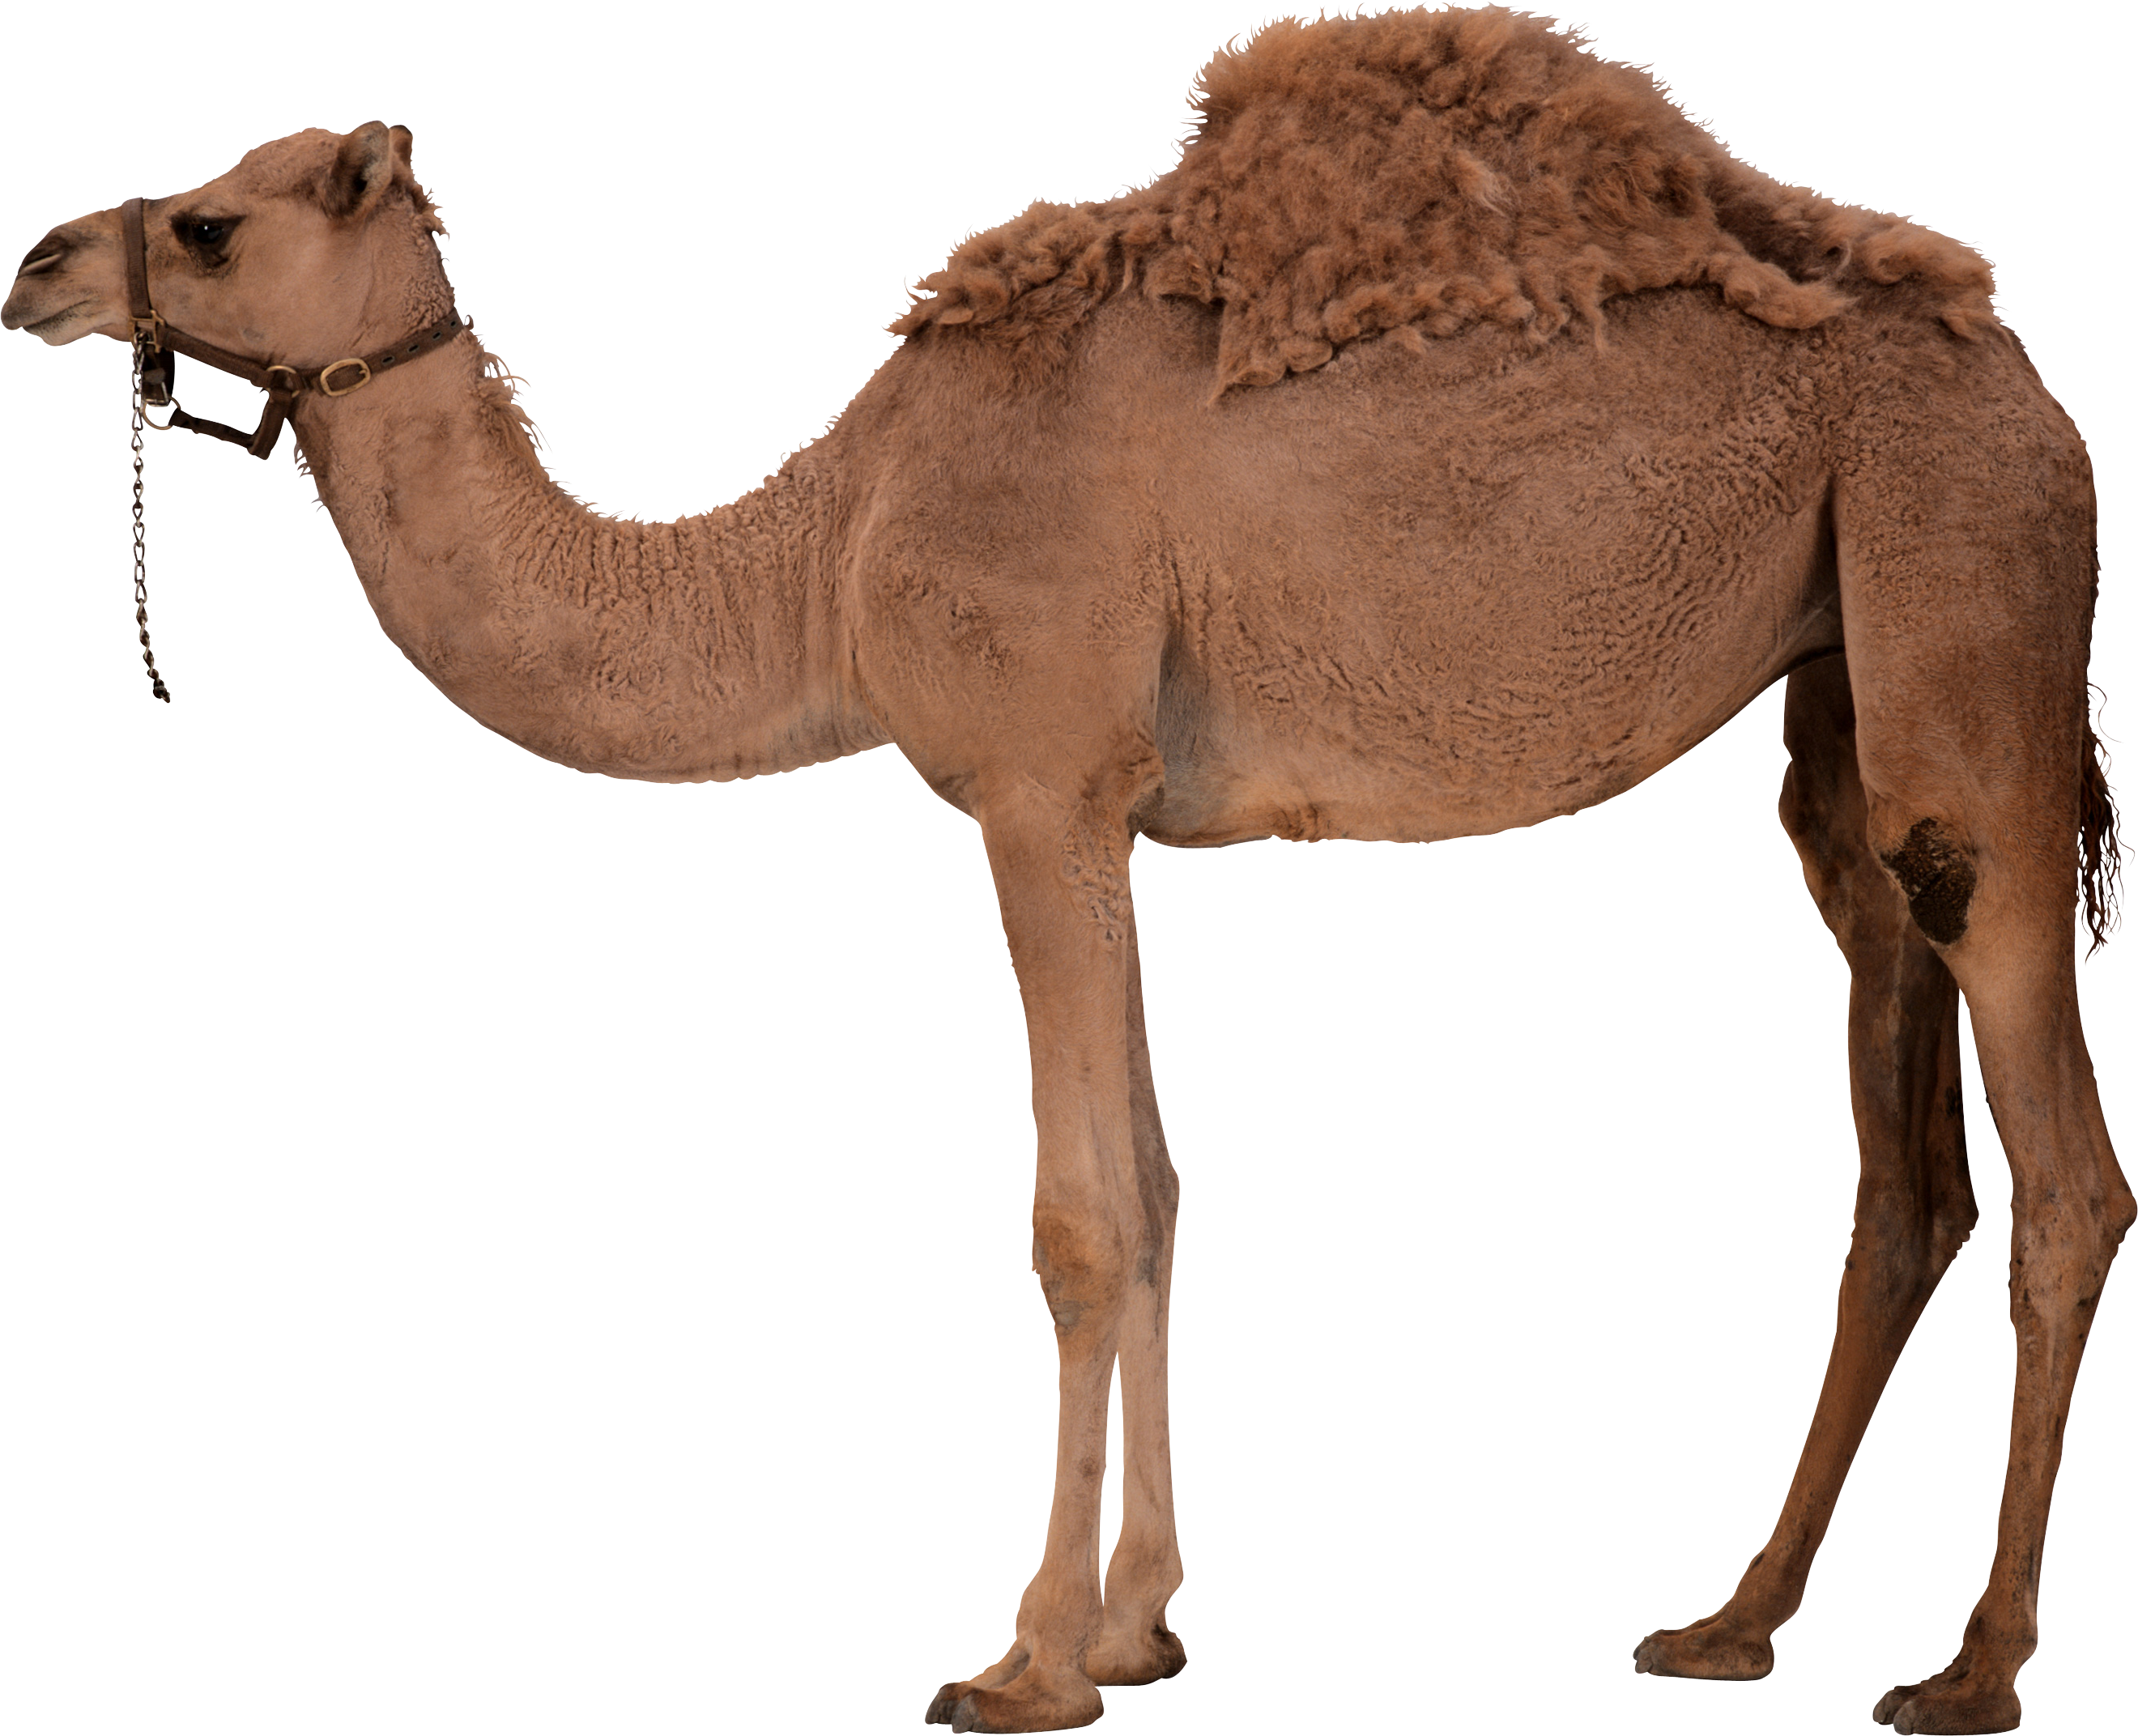 Camel images